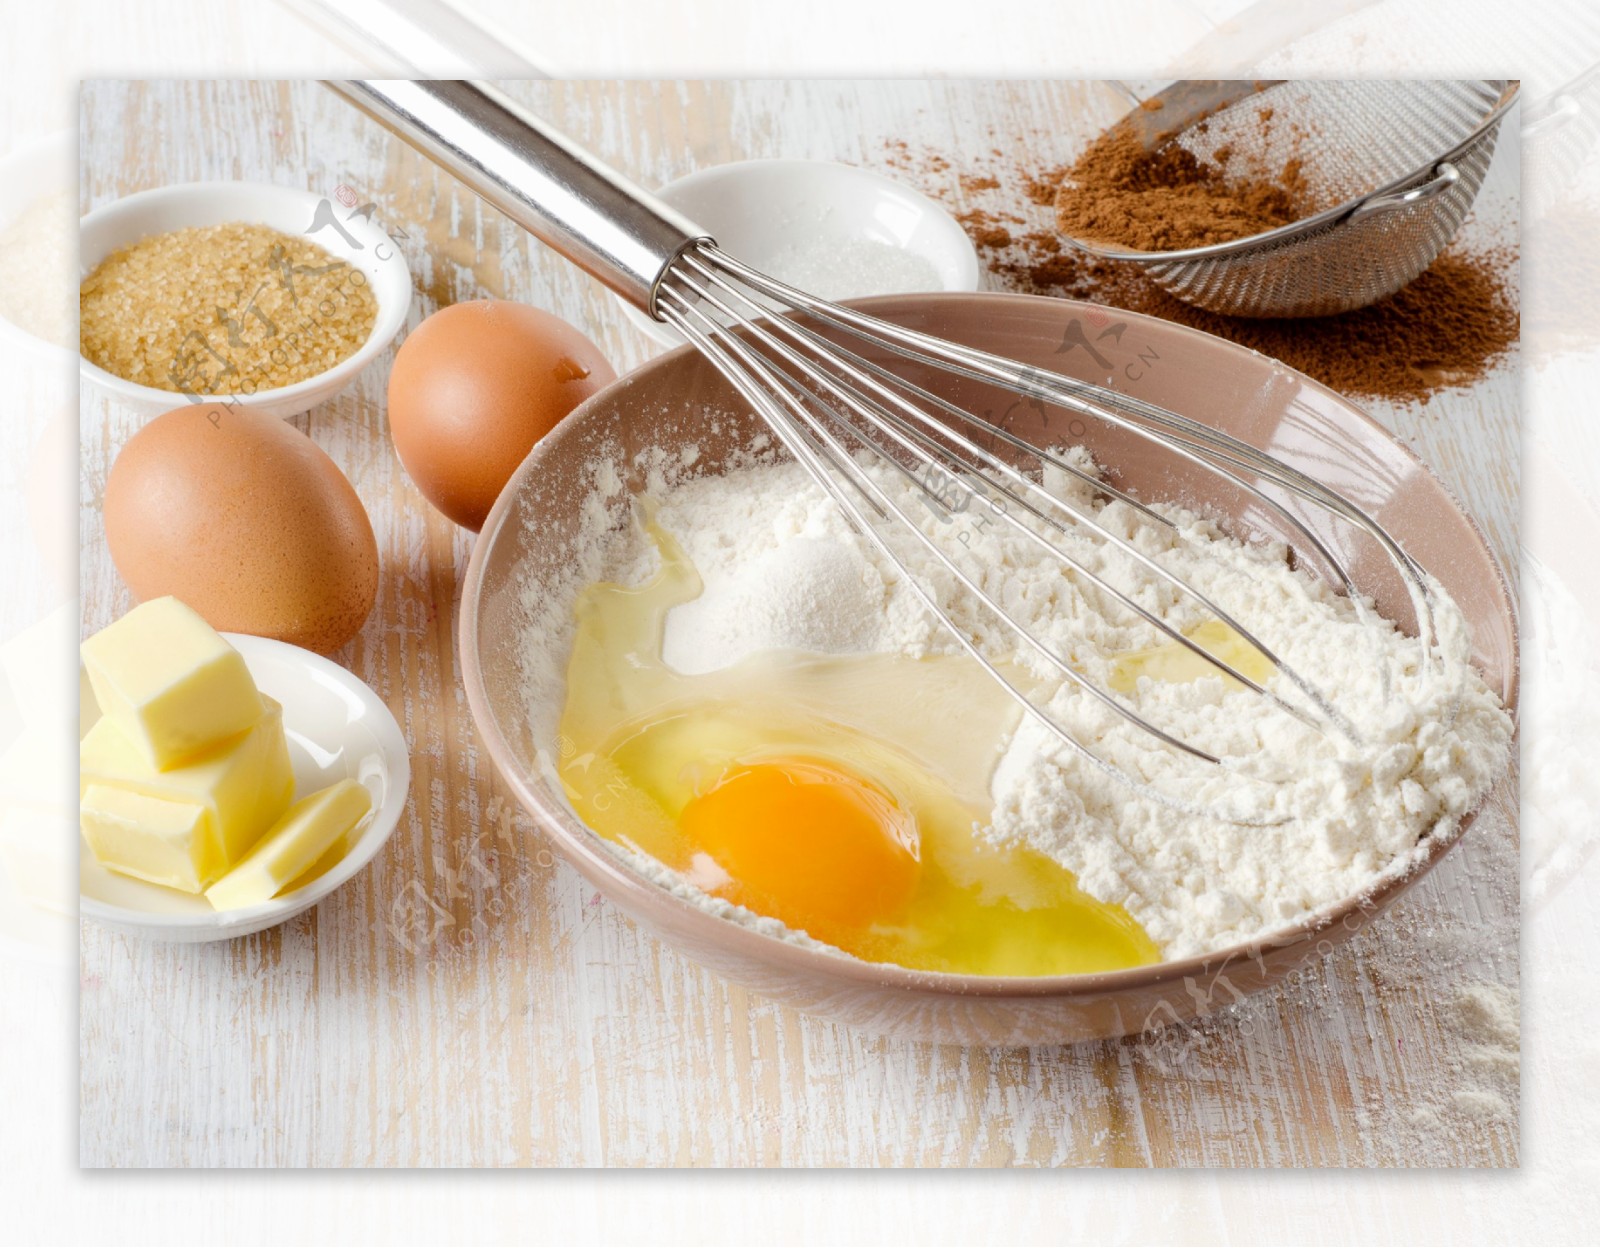 鸡蛋面粉和打蛋器高清摄影